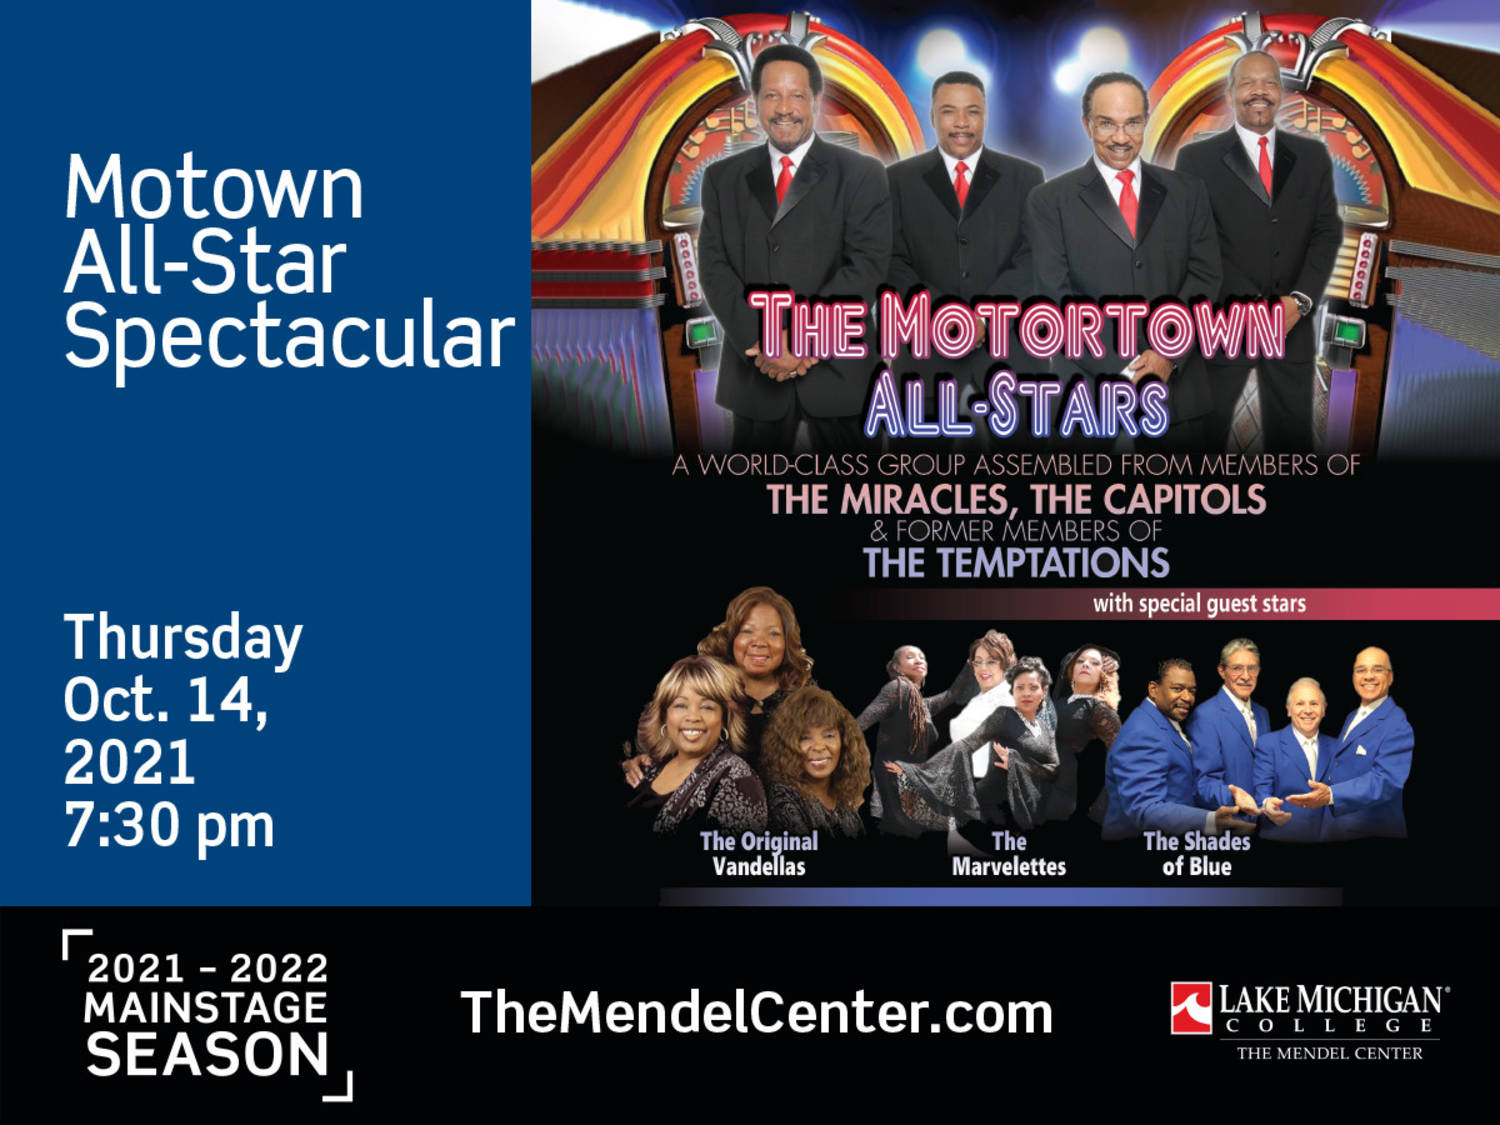 Motown Music returns to The Mendel Center on Oct. 14